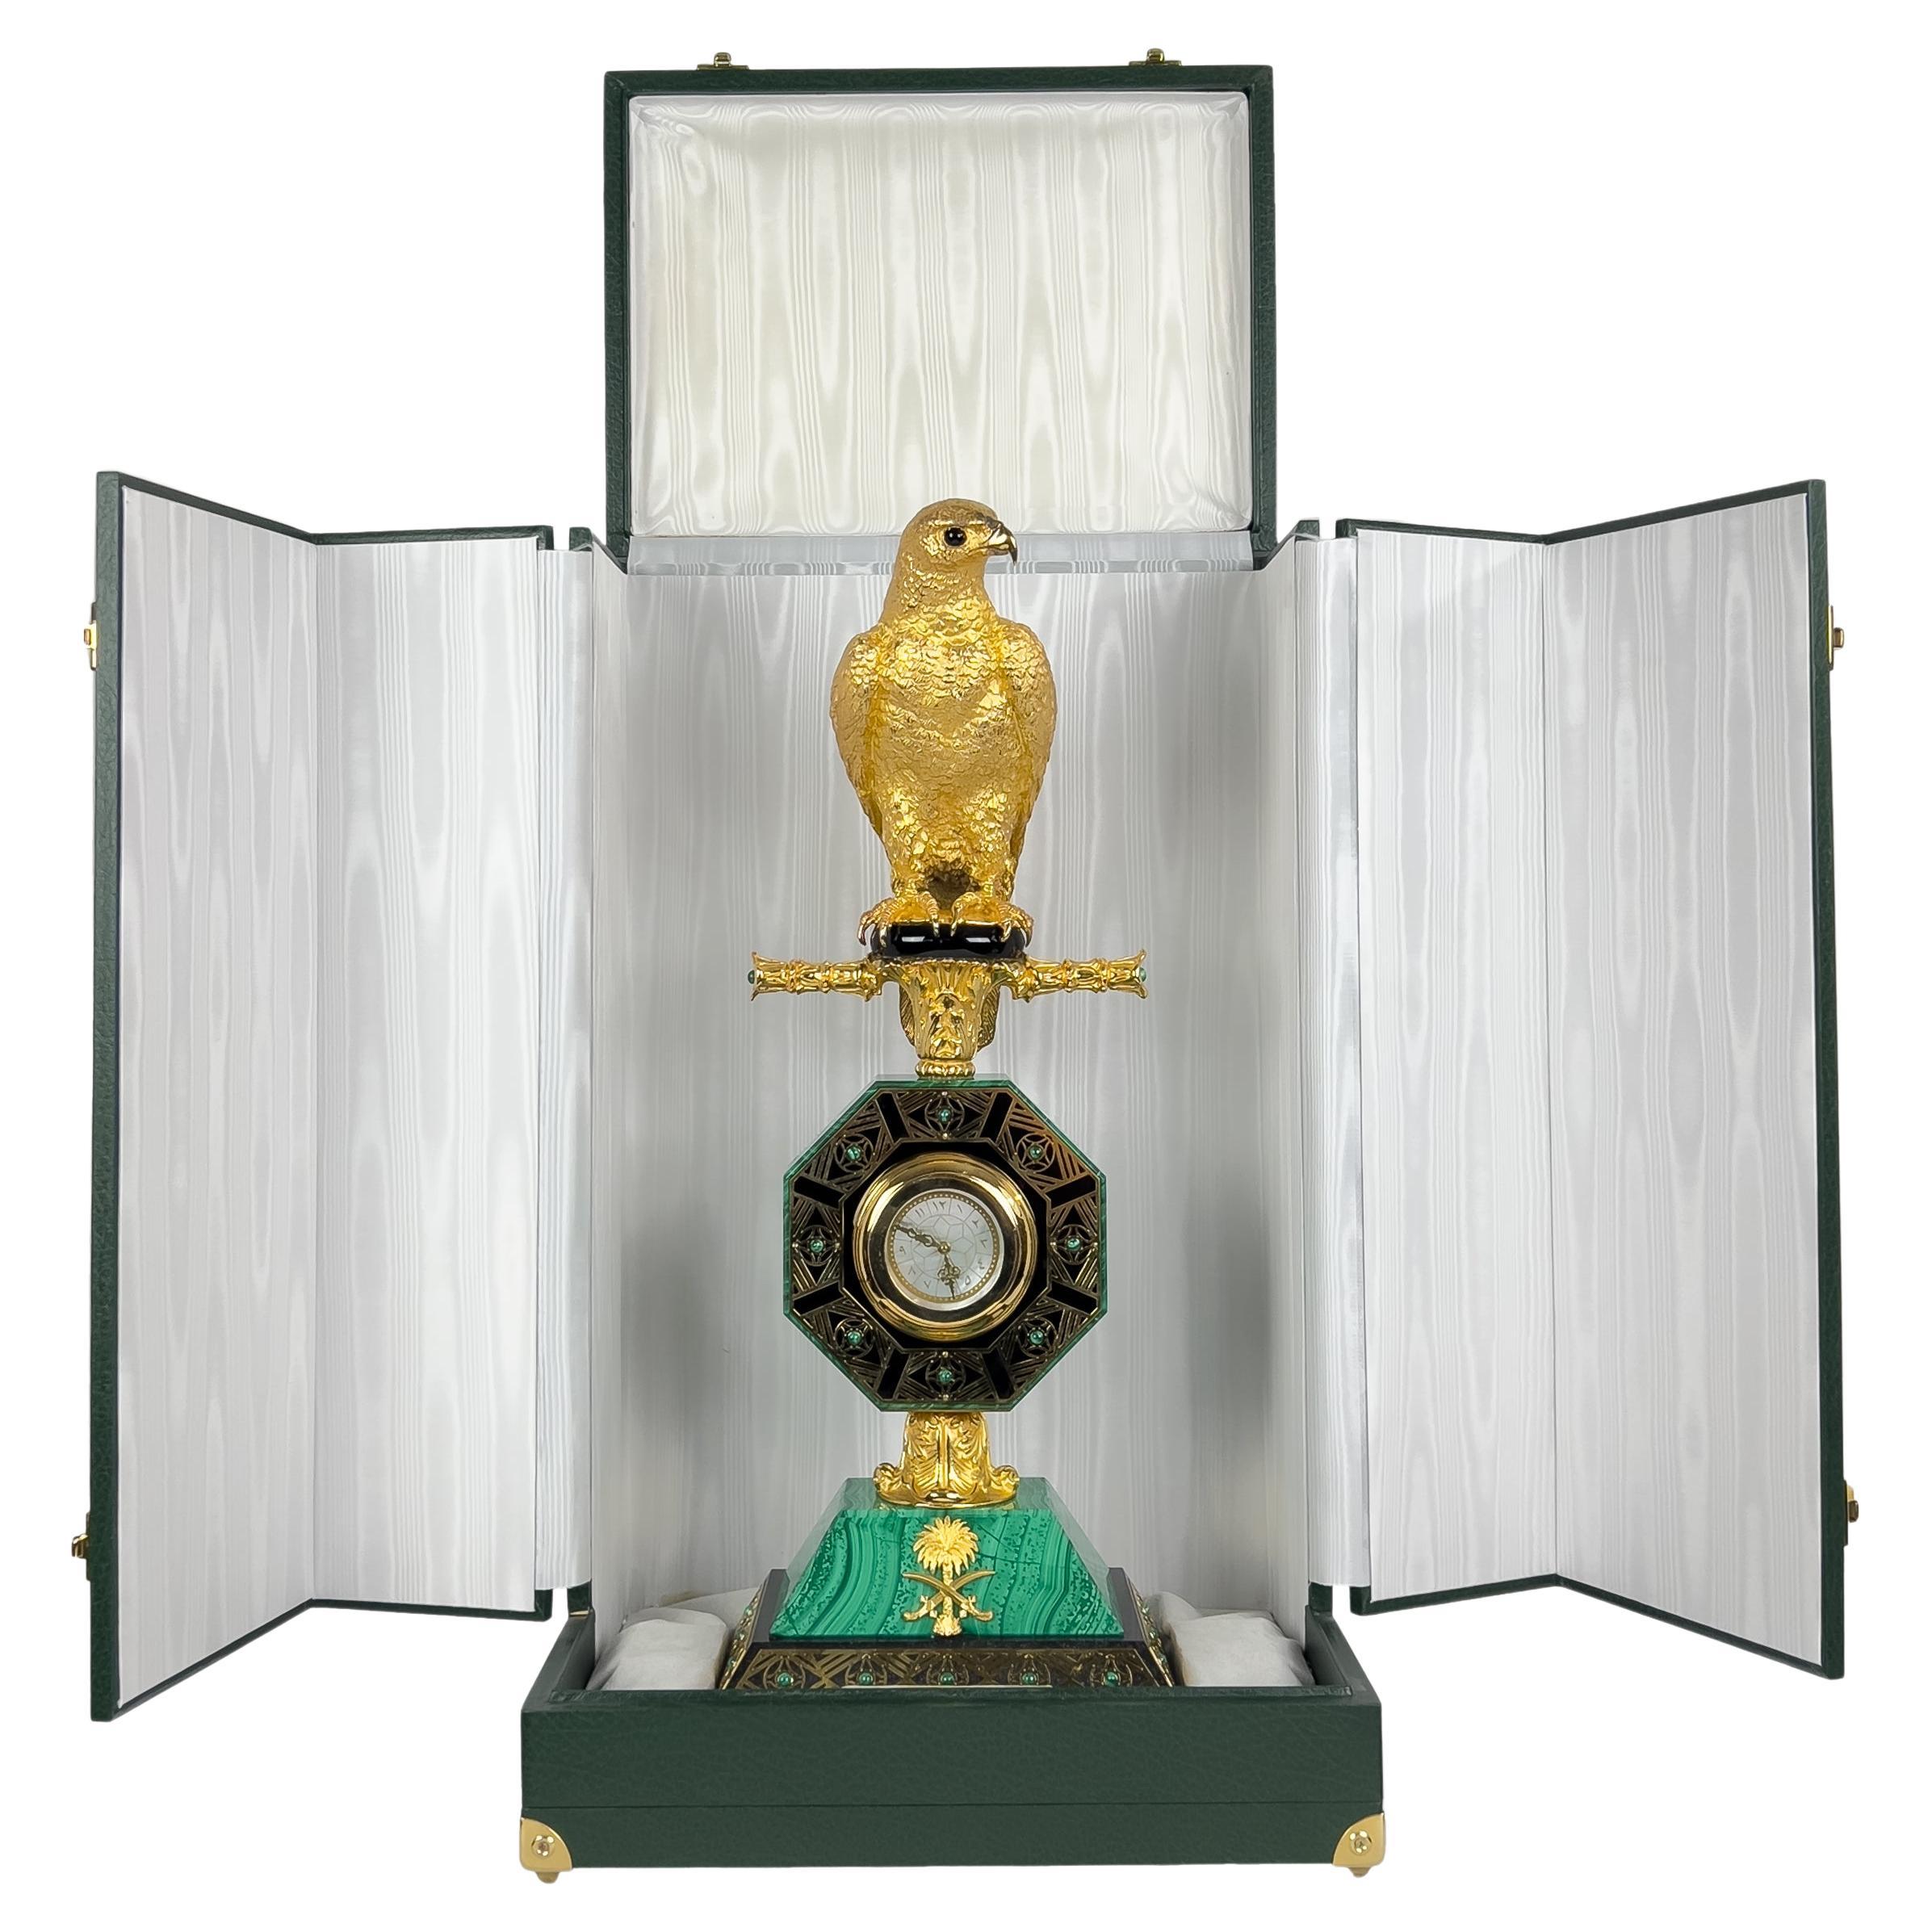 Exquisite Silver and Malachite Clock Falcon Statue: A Gift From Saudi Arabian Ro